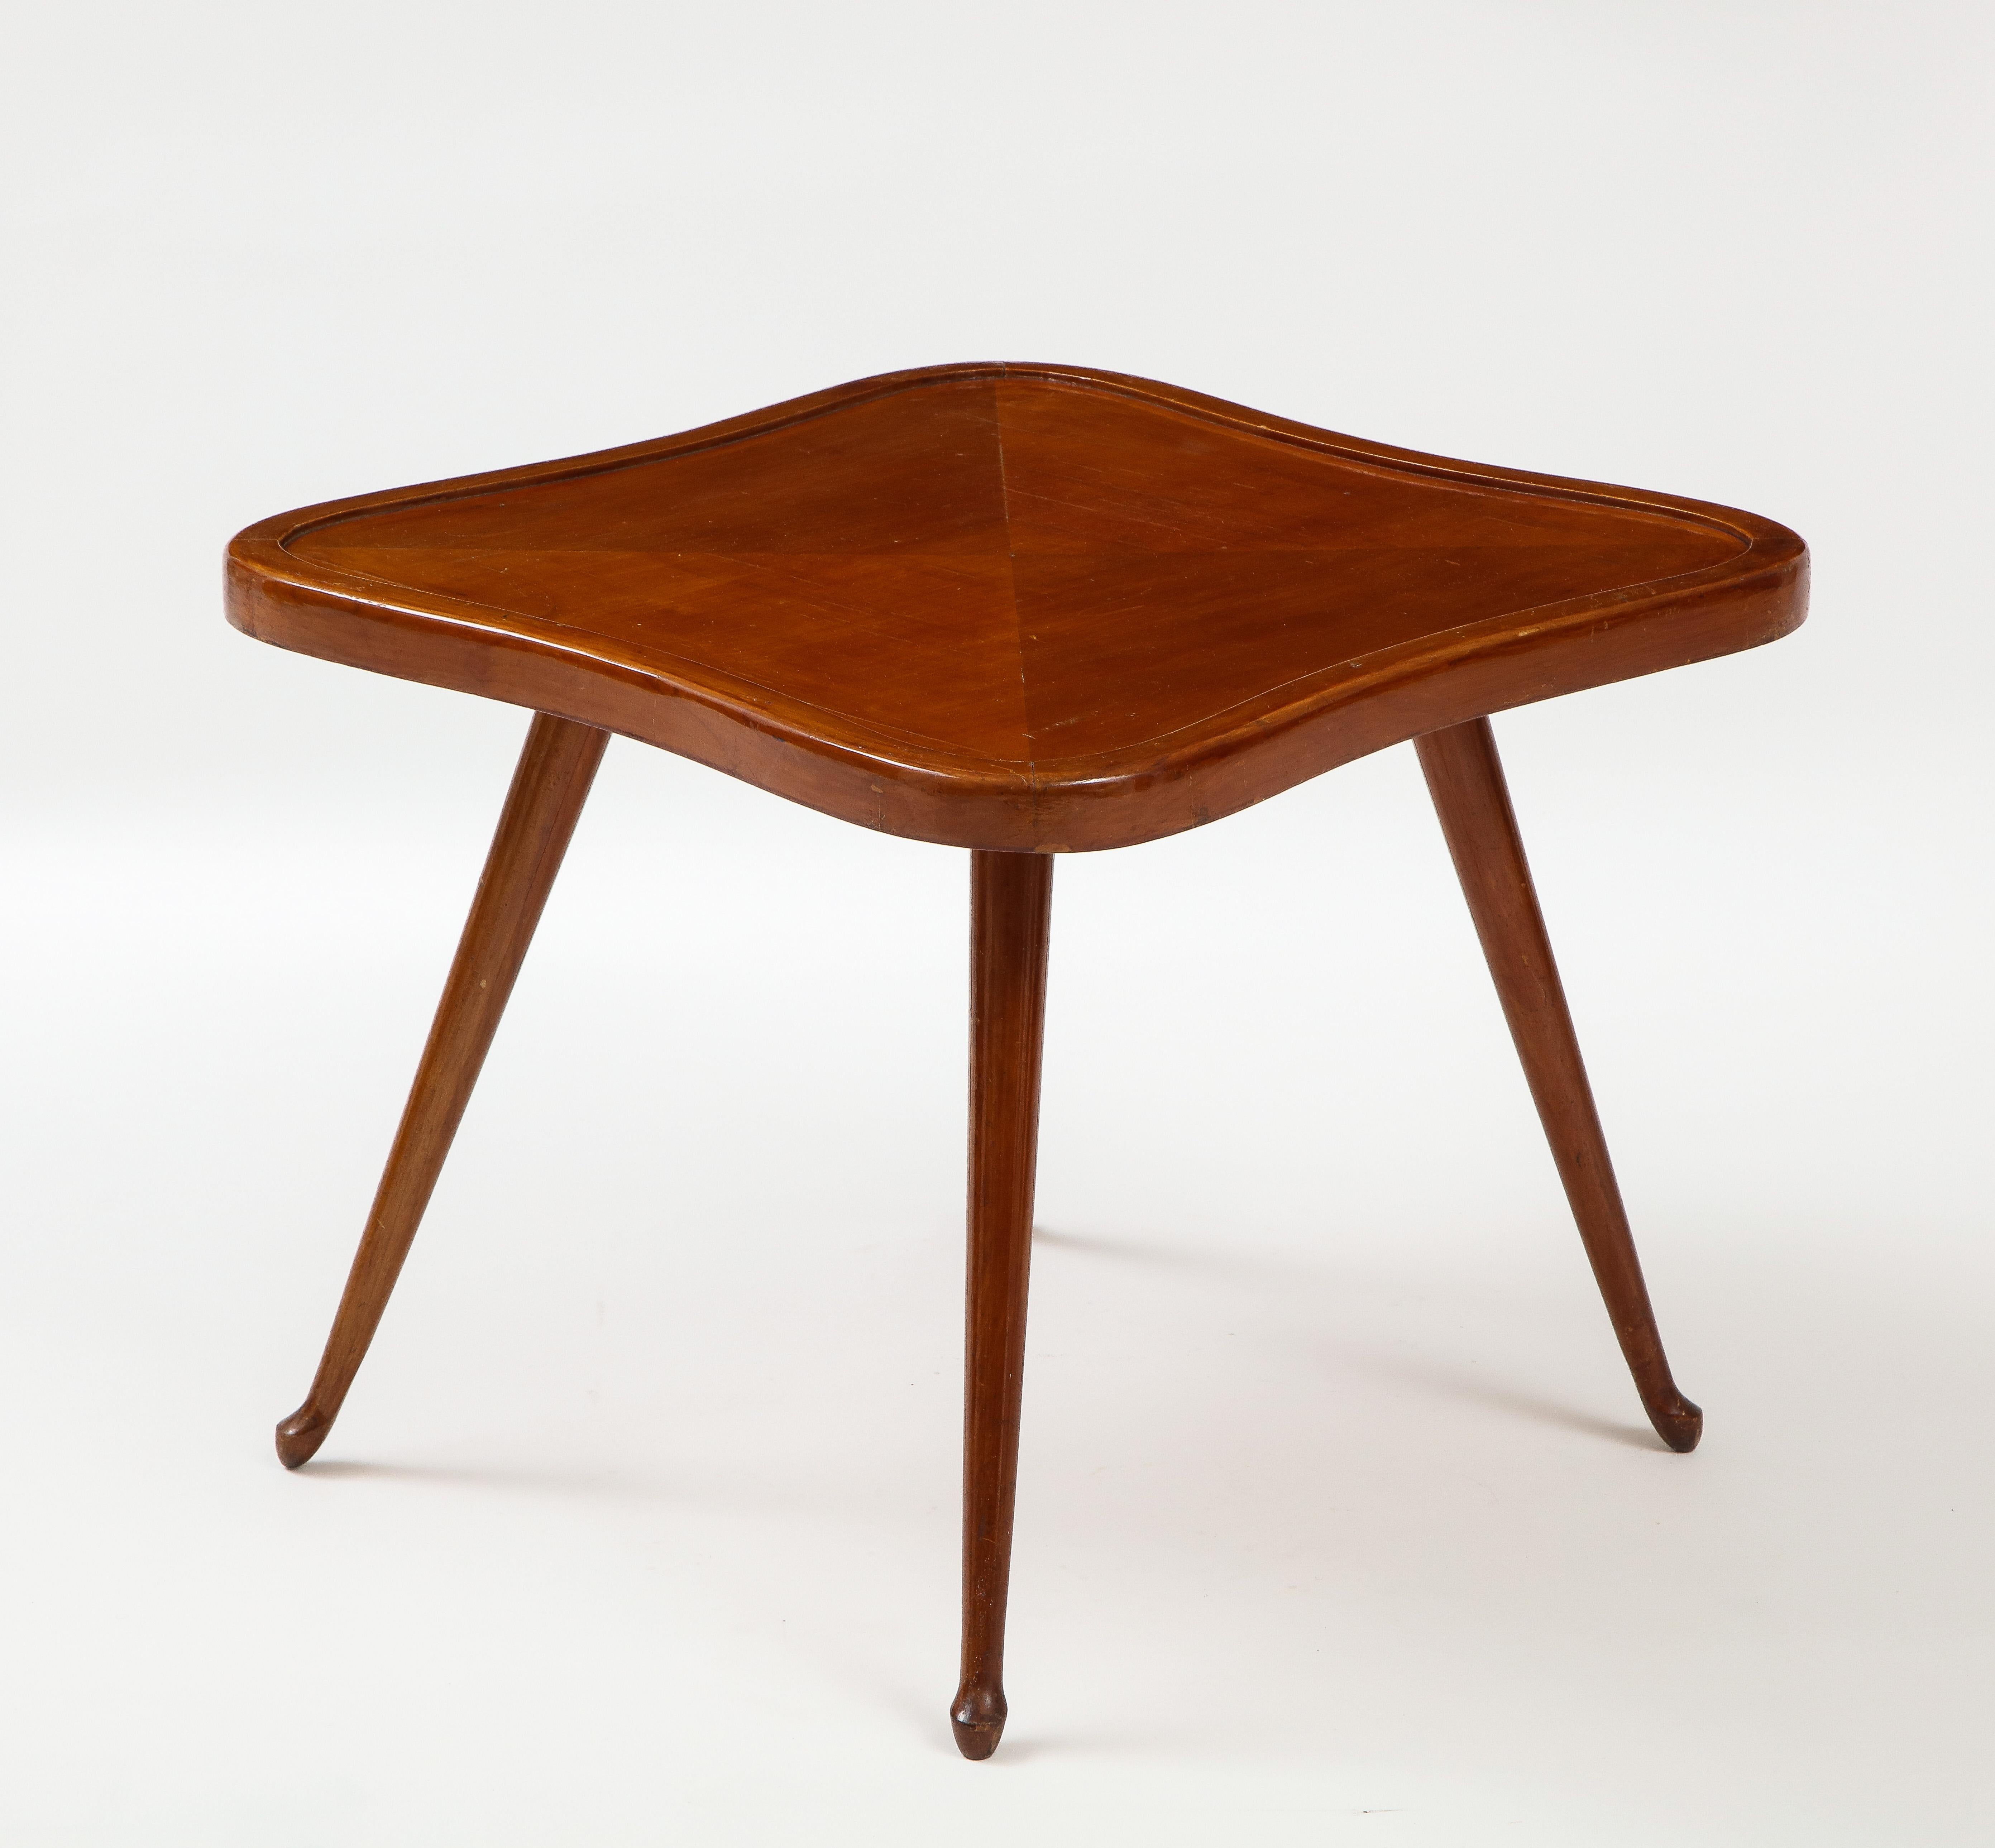 Mahogany Paolo Buffa 'Attrib.' Occasional Clover Shaped Table, c. 1950-60